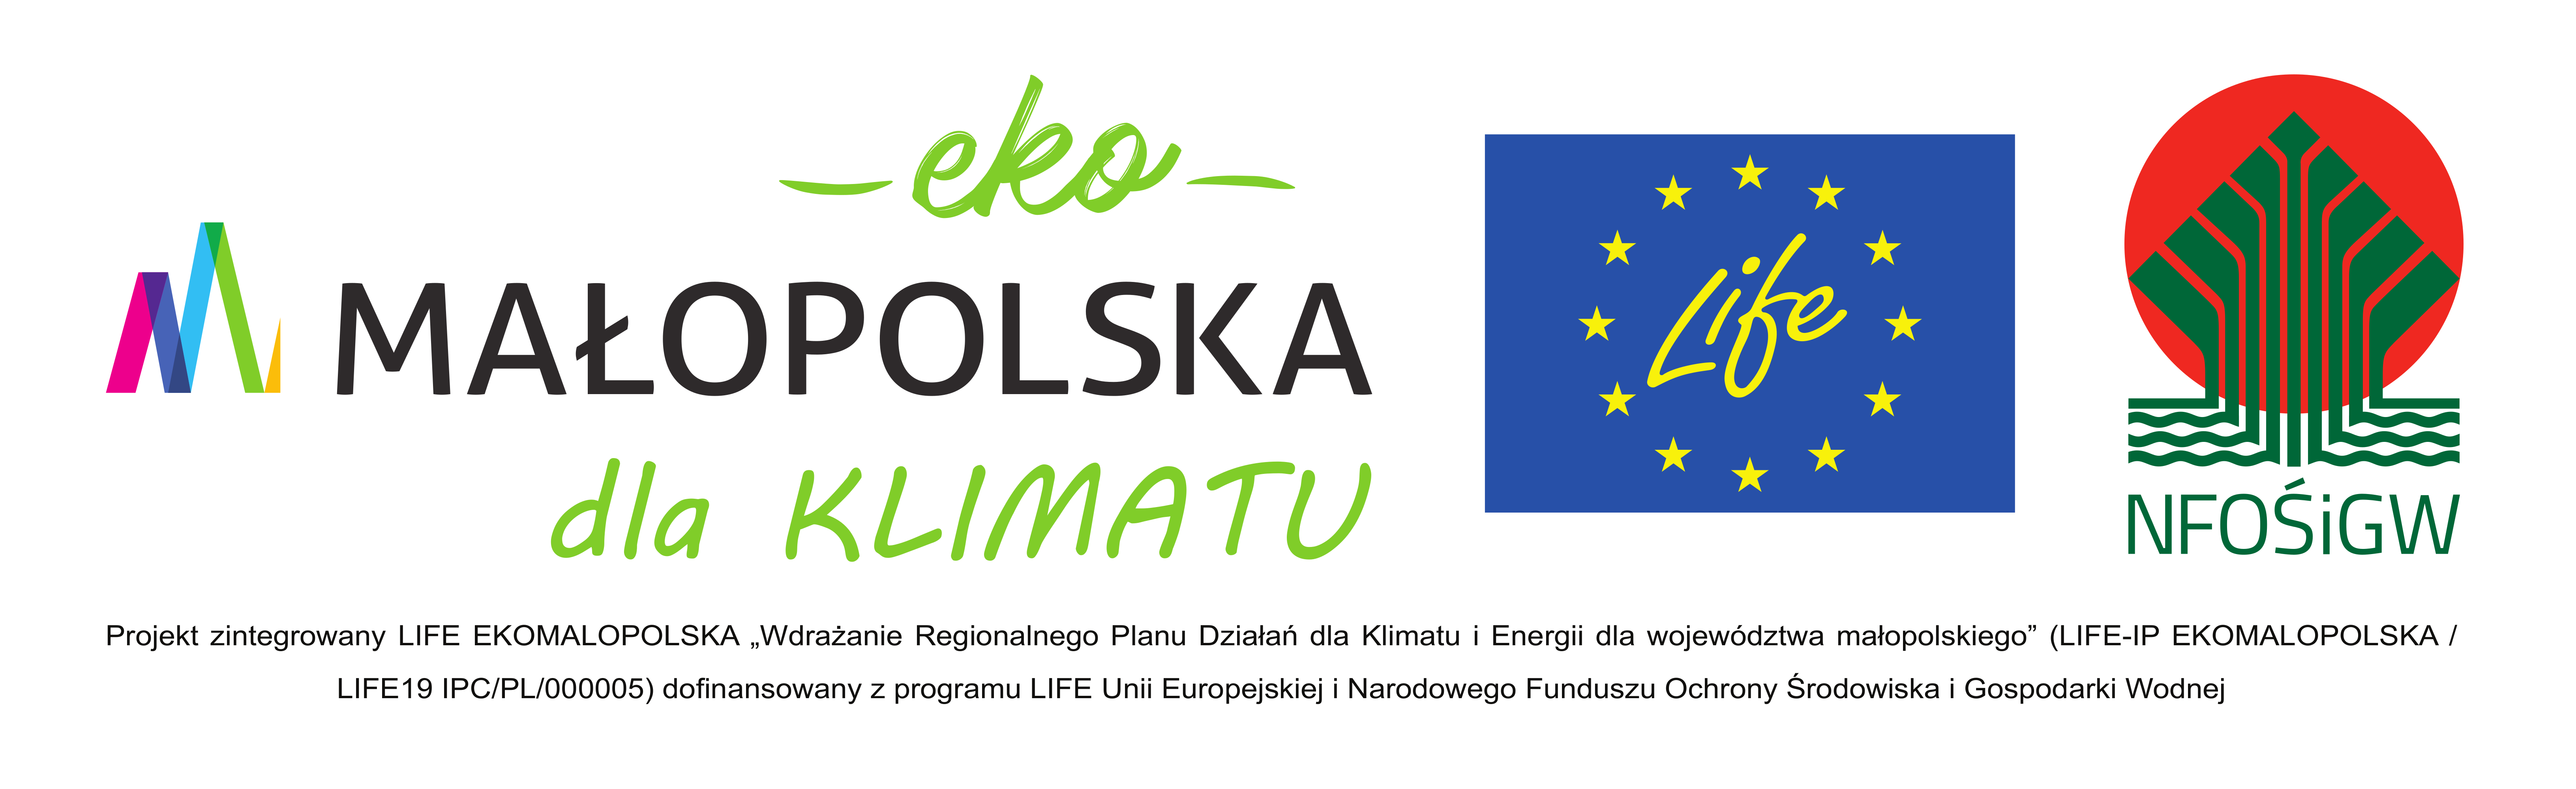 logotypy projekt ekomałopolska